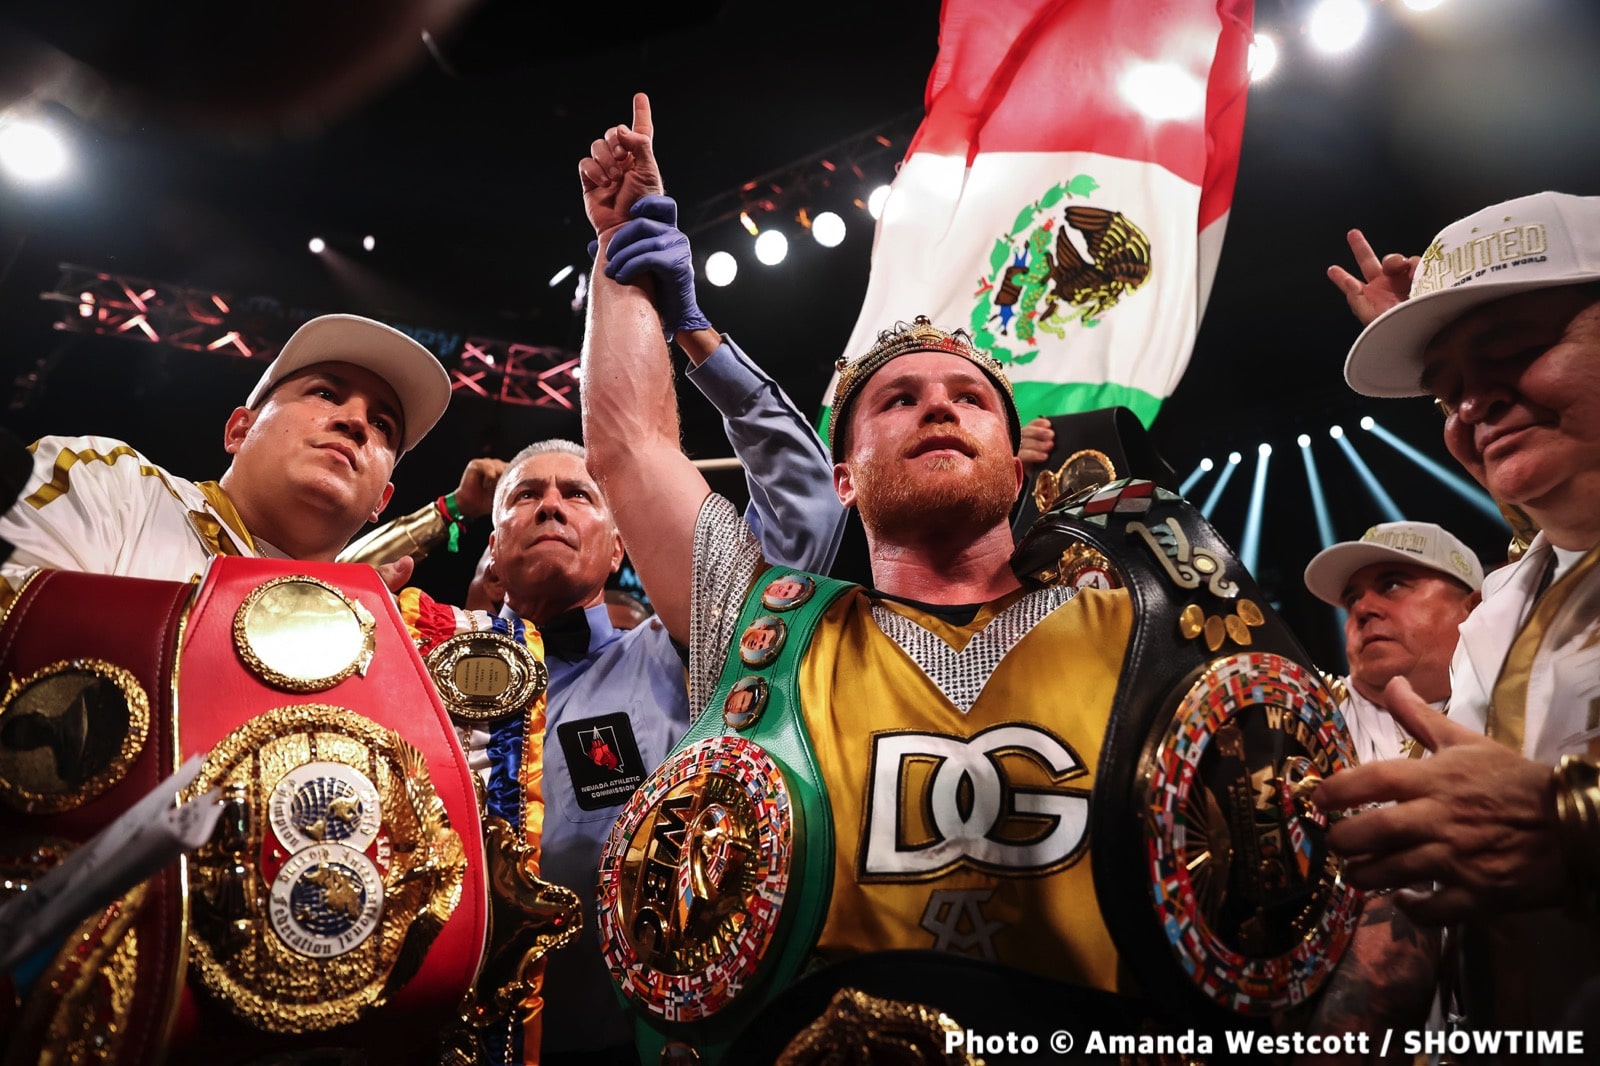 Canelo Alvarez, David Benavidez, Floyd Mayweather Jr boxing photo and news image